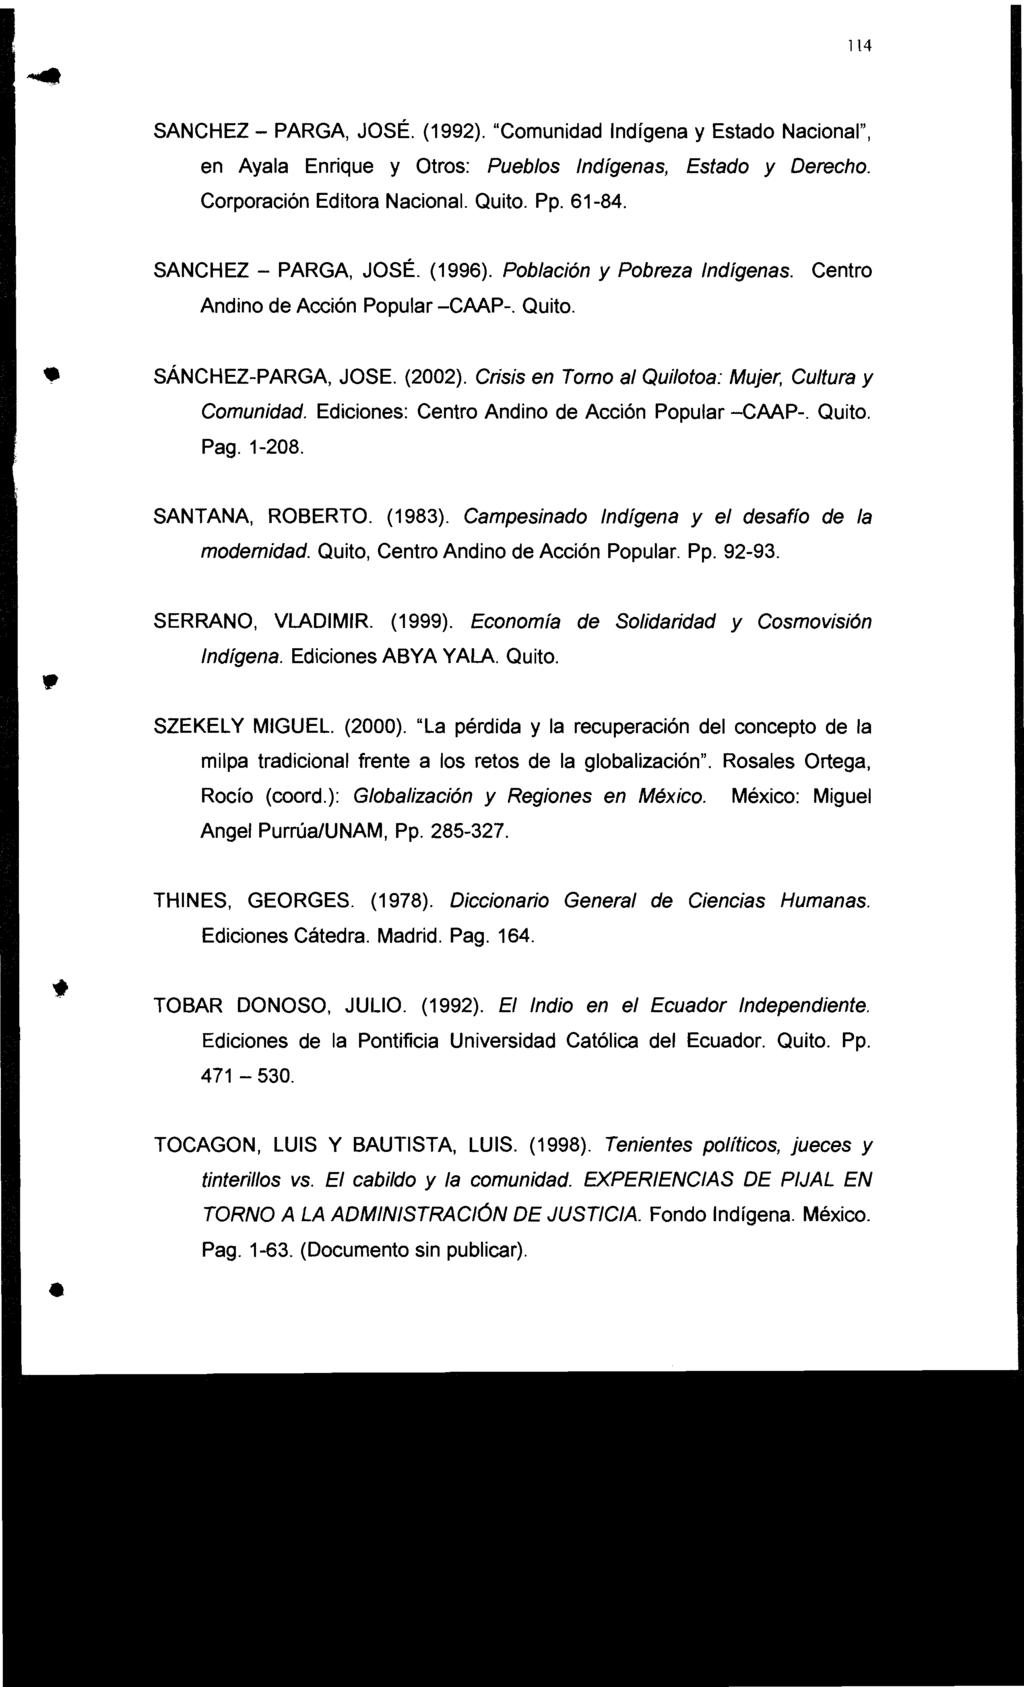 114 SANCHEZ - PARGA, JOSÉ. (1992). "Comunidad Indígena y Estado Nacional", en Ayala Enrique y Otros: Pueblos Indígenas, Estado y Derecho. Corporación Editora Nacional. Quito. Pp. 61-84.